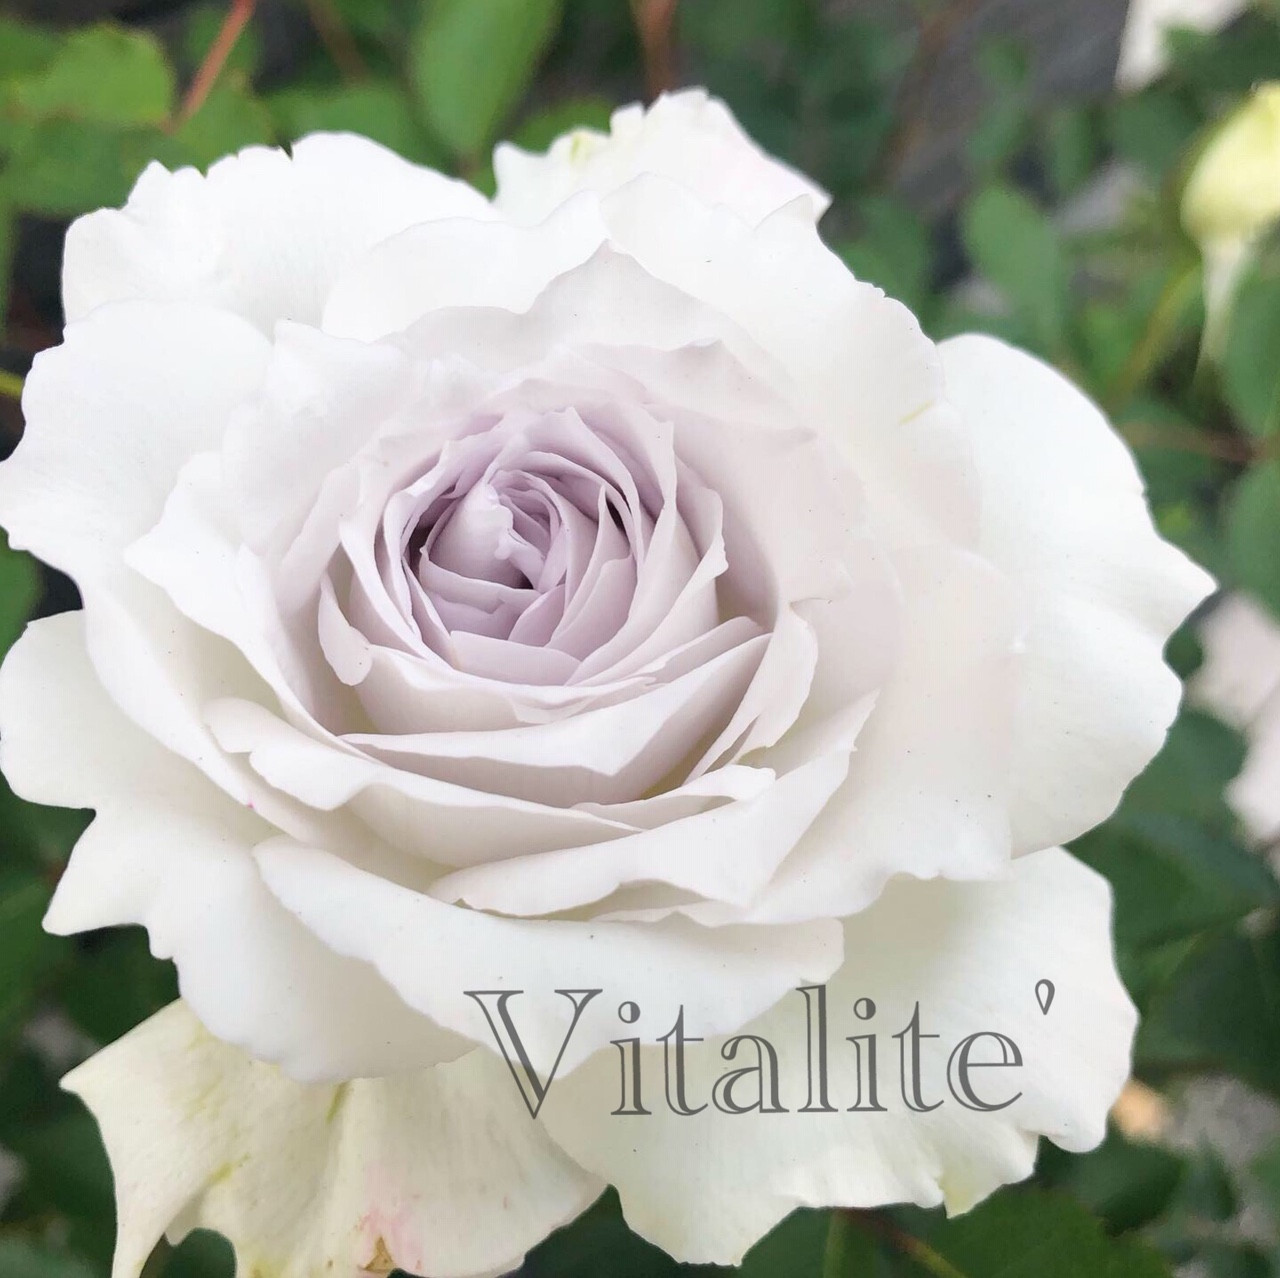 vitarite’　名前の由来